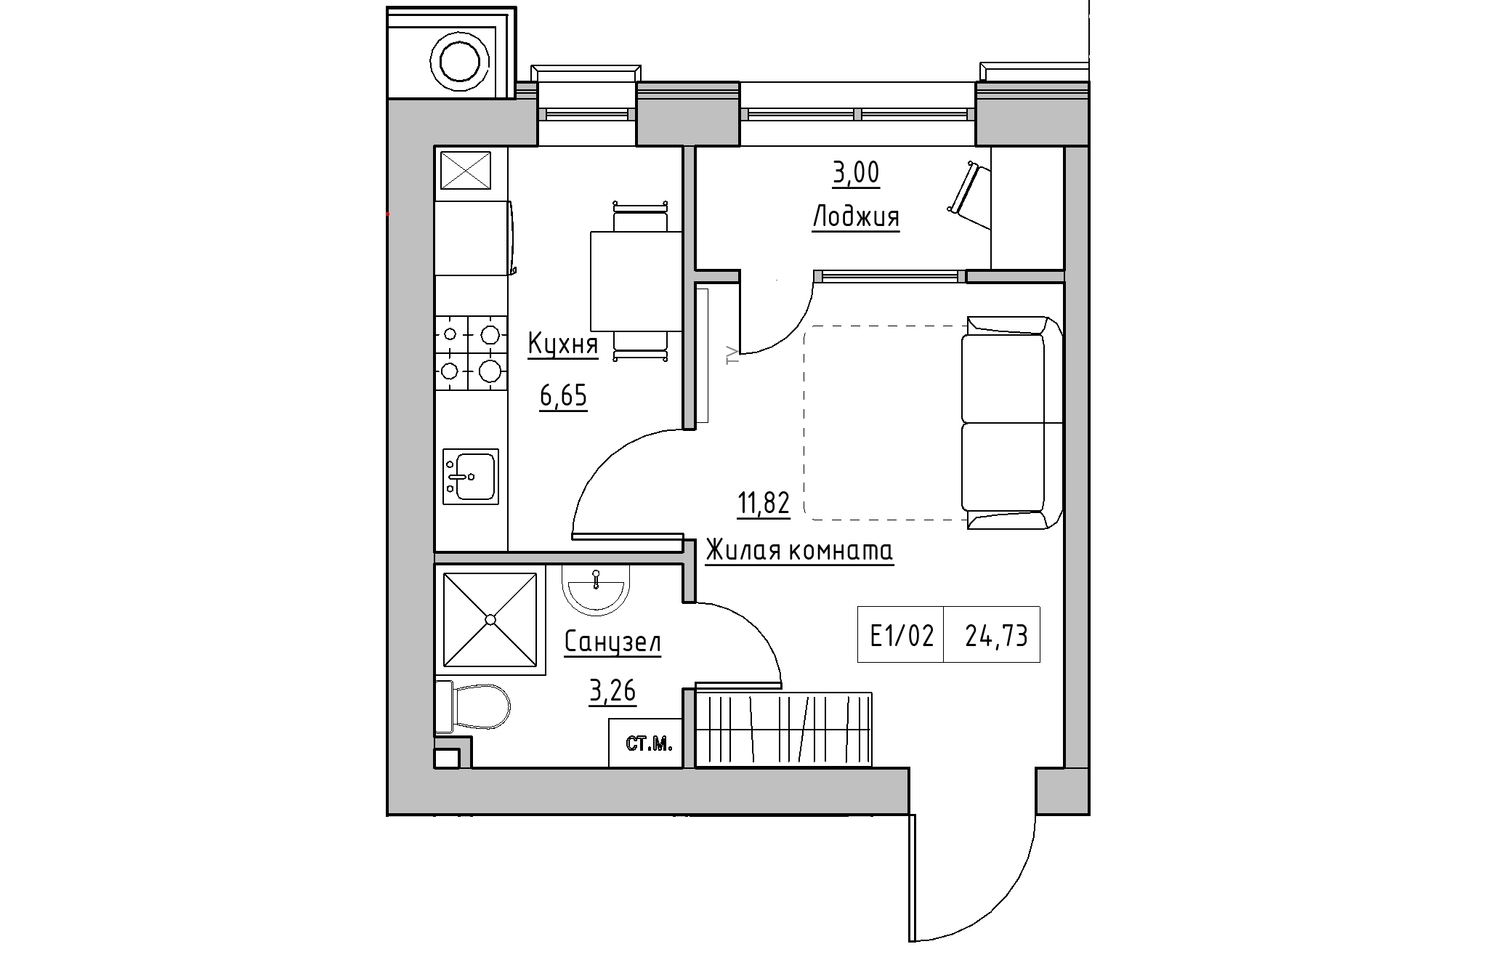 Планування 1-к квартира площею 24.73м2, KS-010-03/0004.